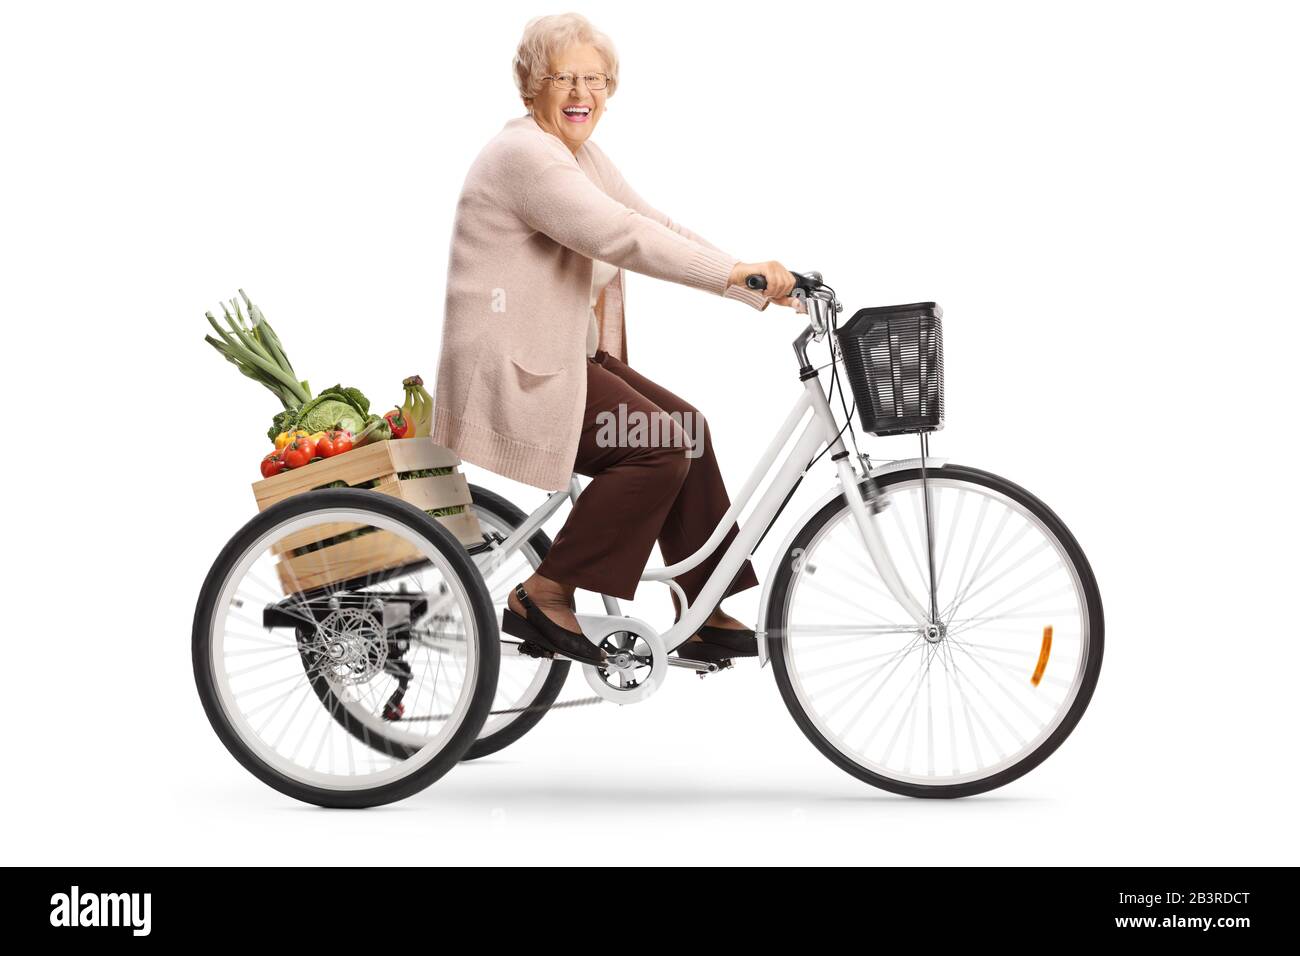 Frau, dreirad fahren Ausgeschnittene Stockfotos und -bilder - Alamy